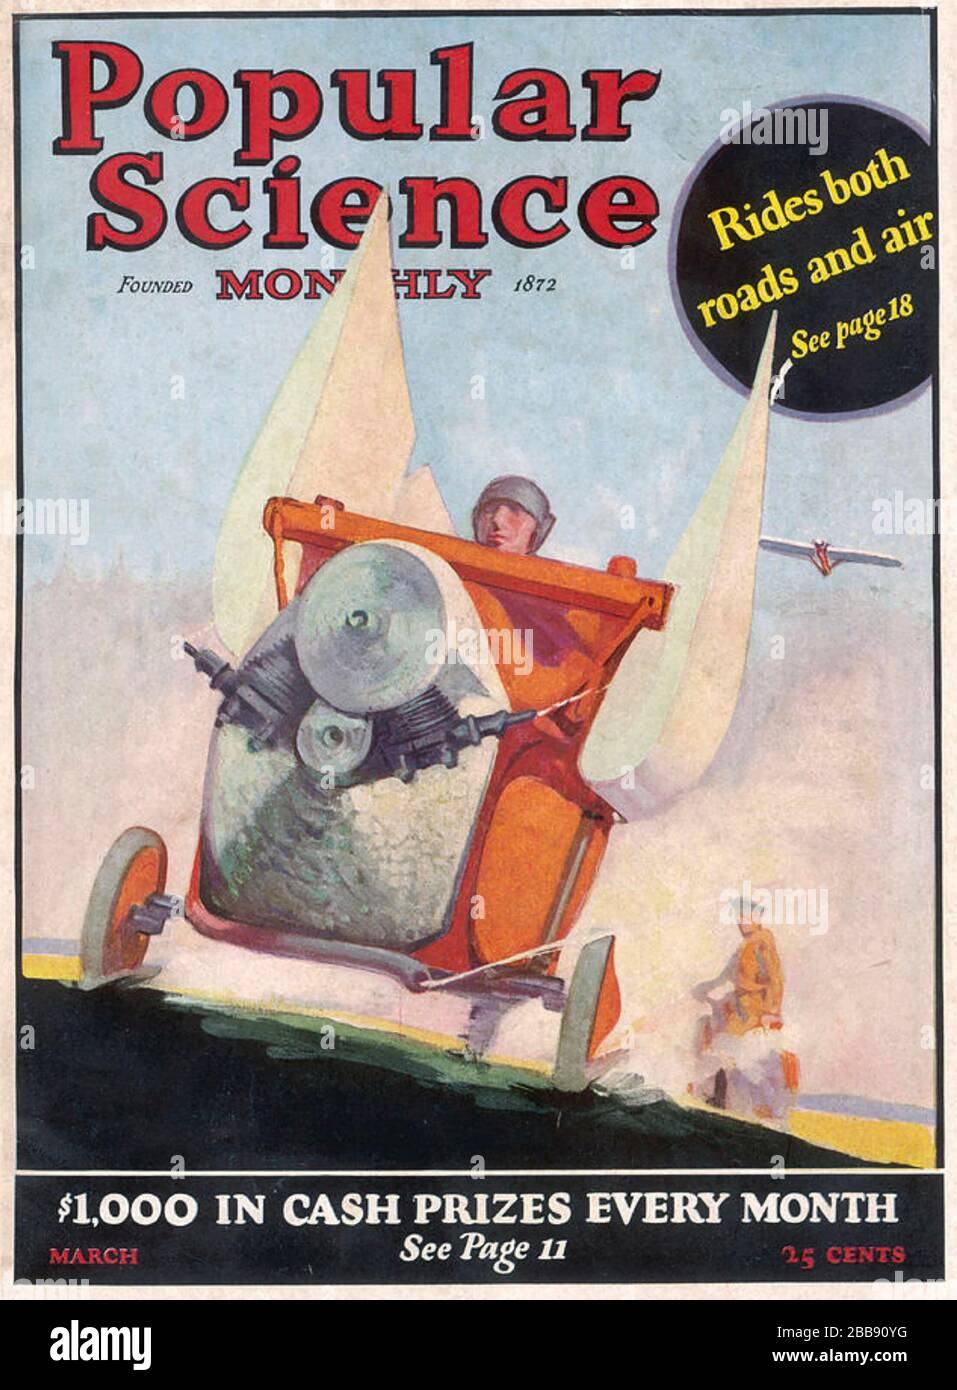 J. H MAYKEMPER Deutscher Bauingenieur aus Frankfurt mit seinem Flying Car auf dem Cover der amerikanischen Zeitschrift Popular Science im März 1926. Stockfoto